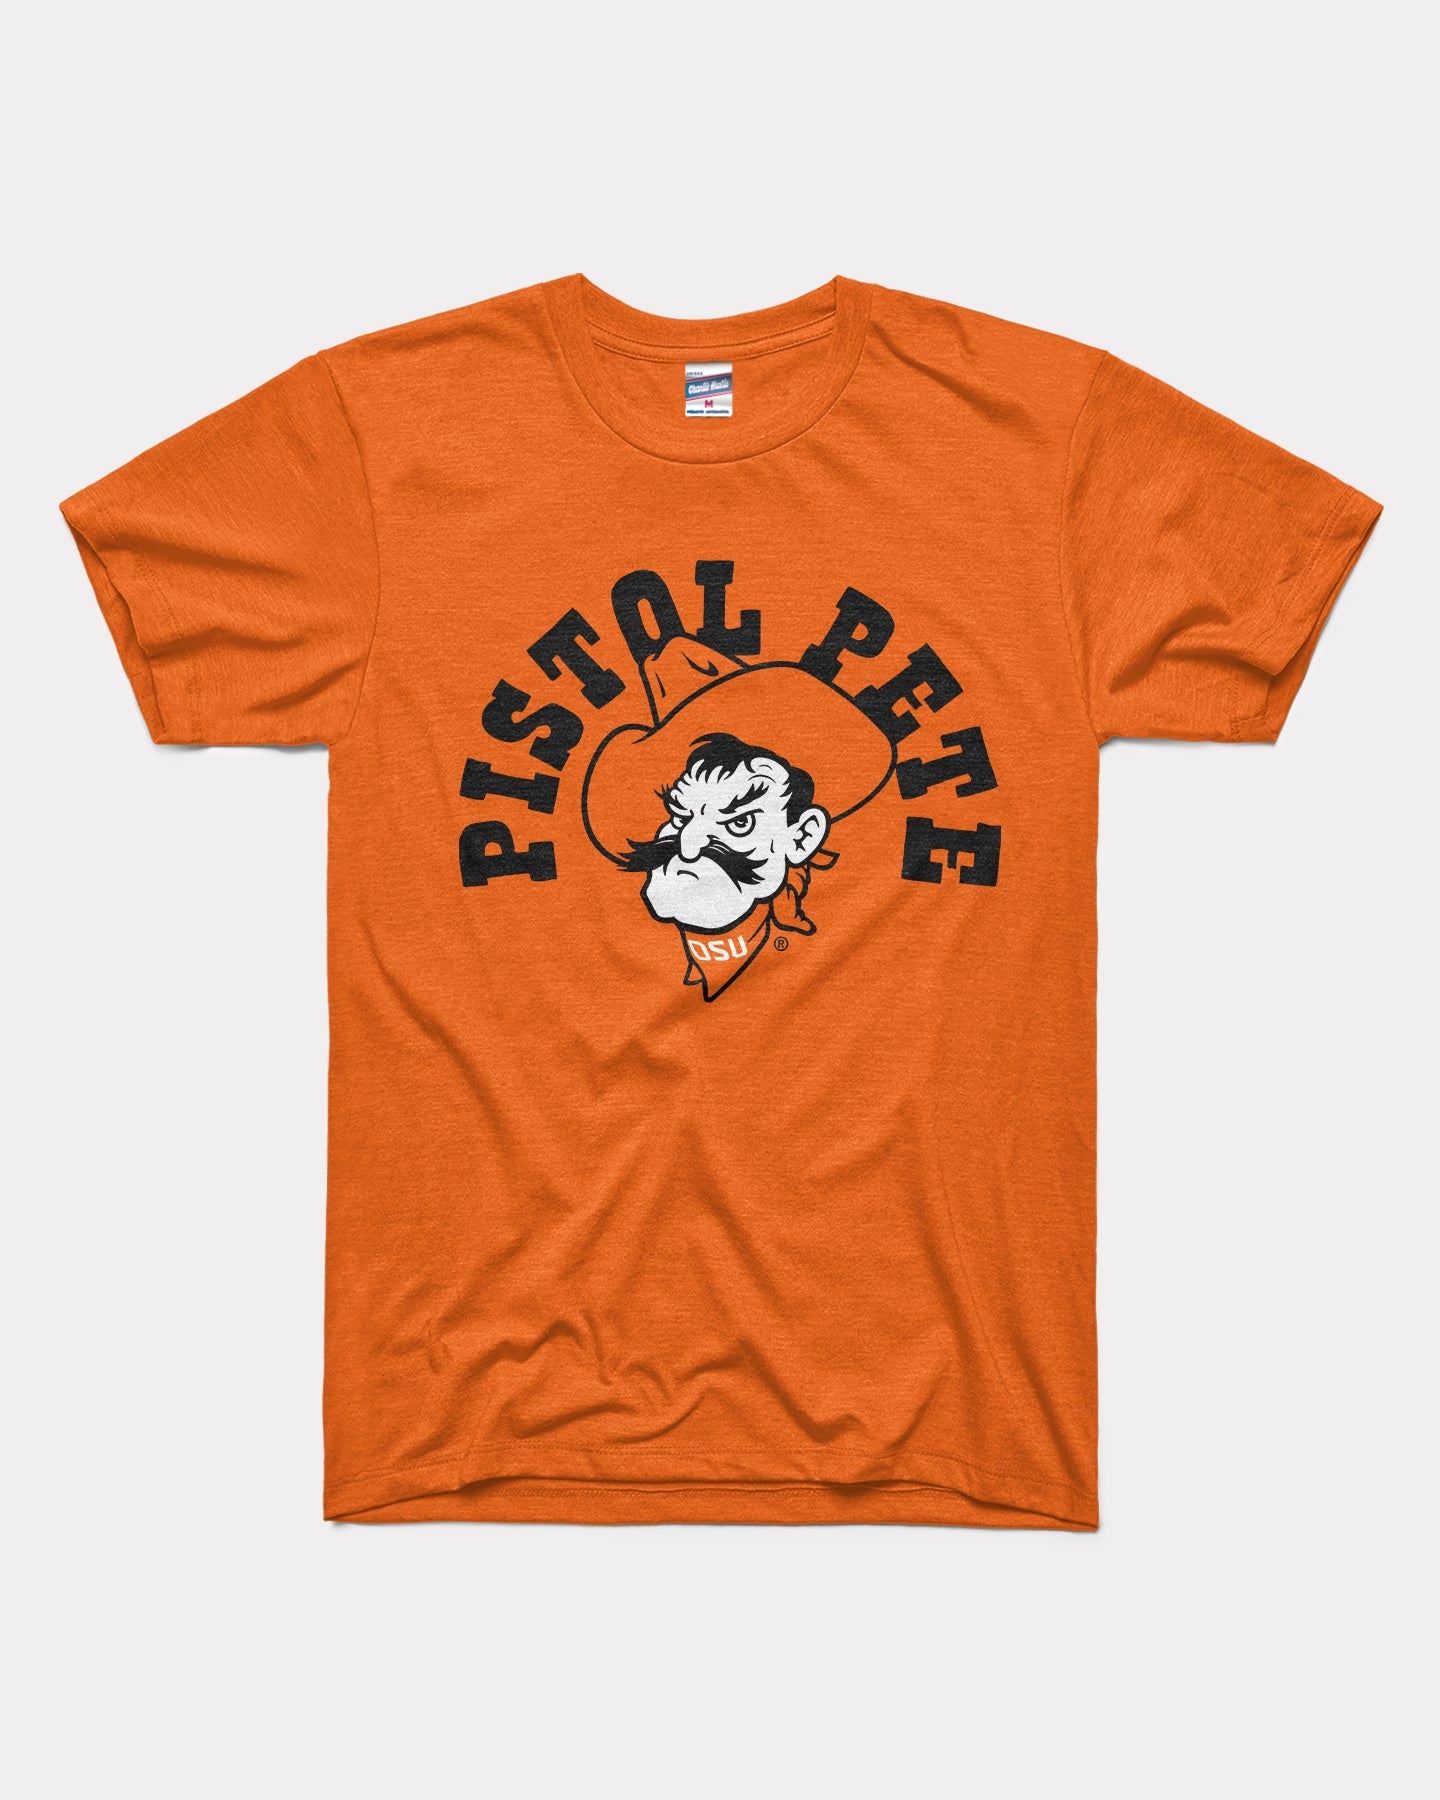 LOGO 7, Shirts, Vintage Pittsburgh Pirates T Shirt